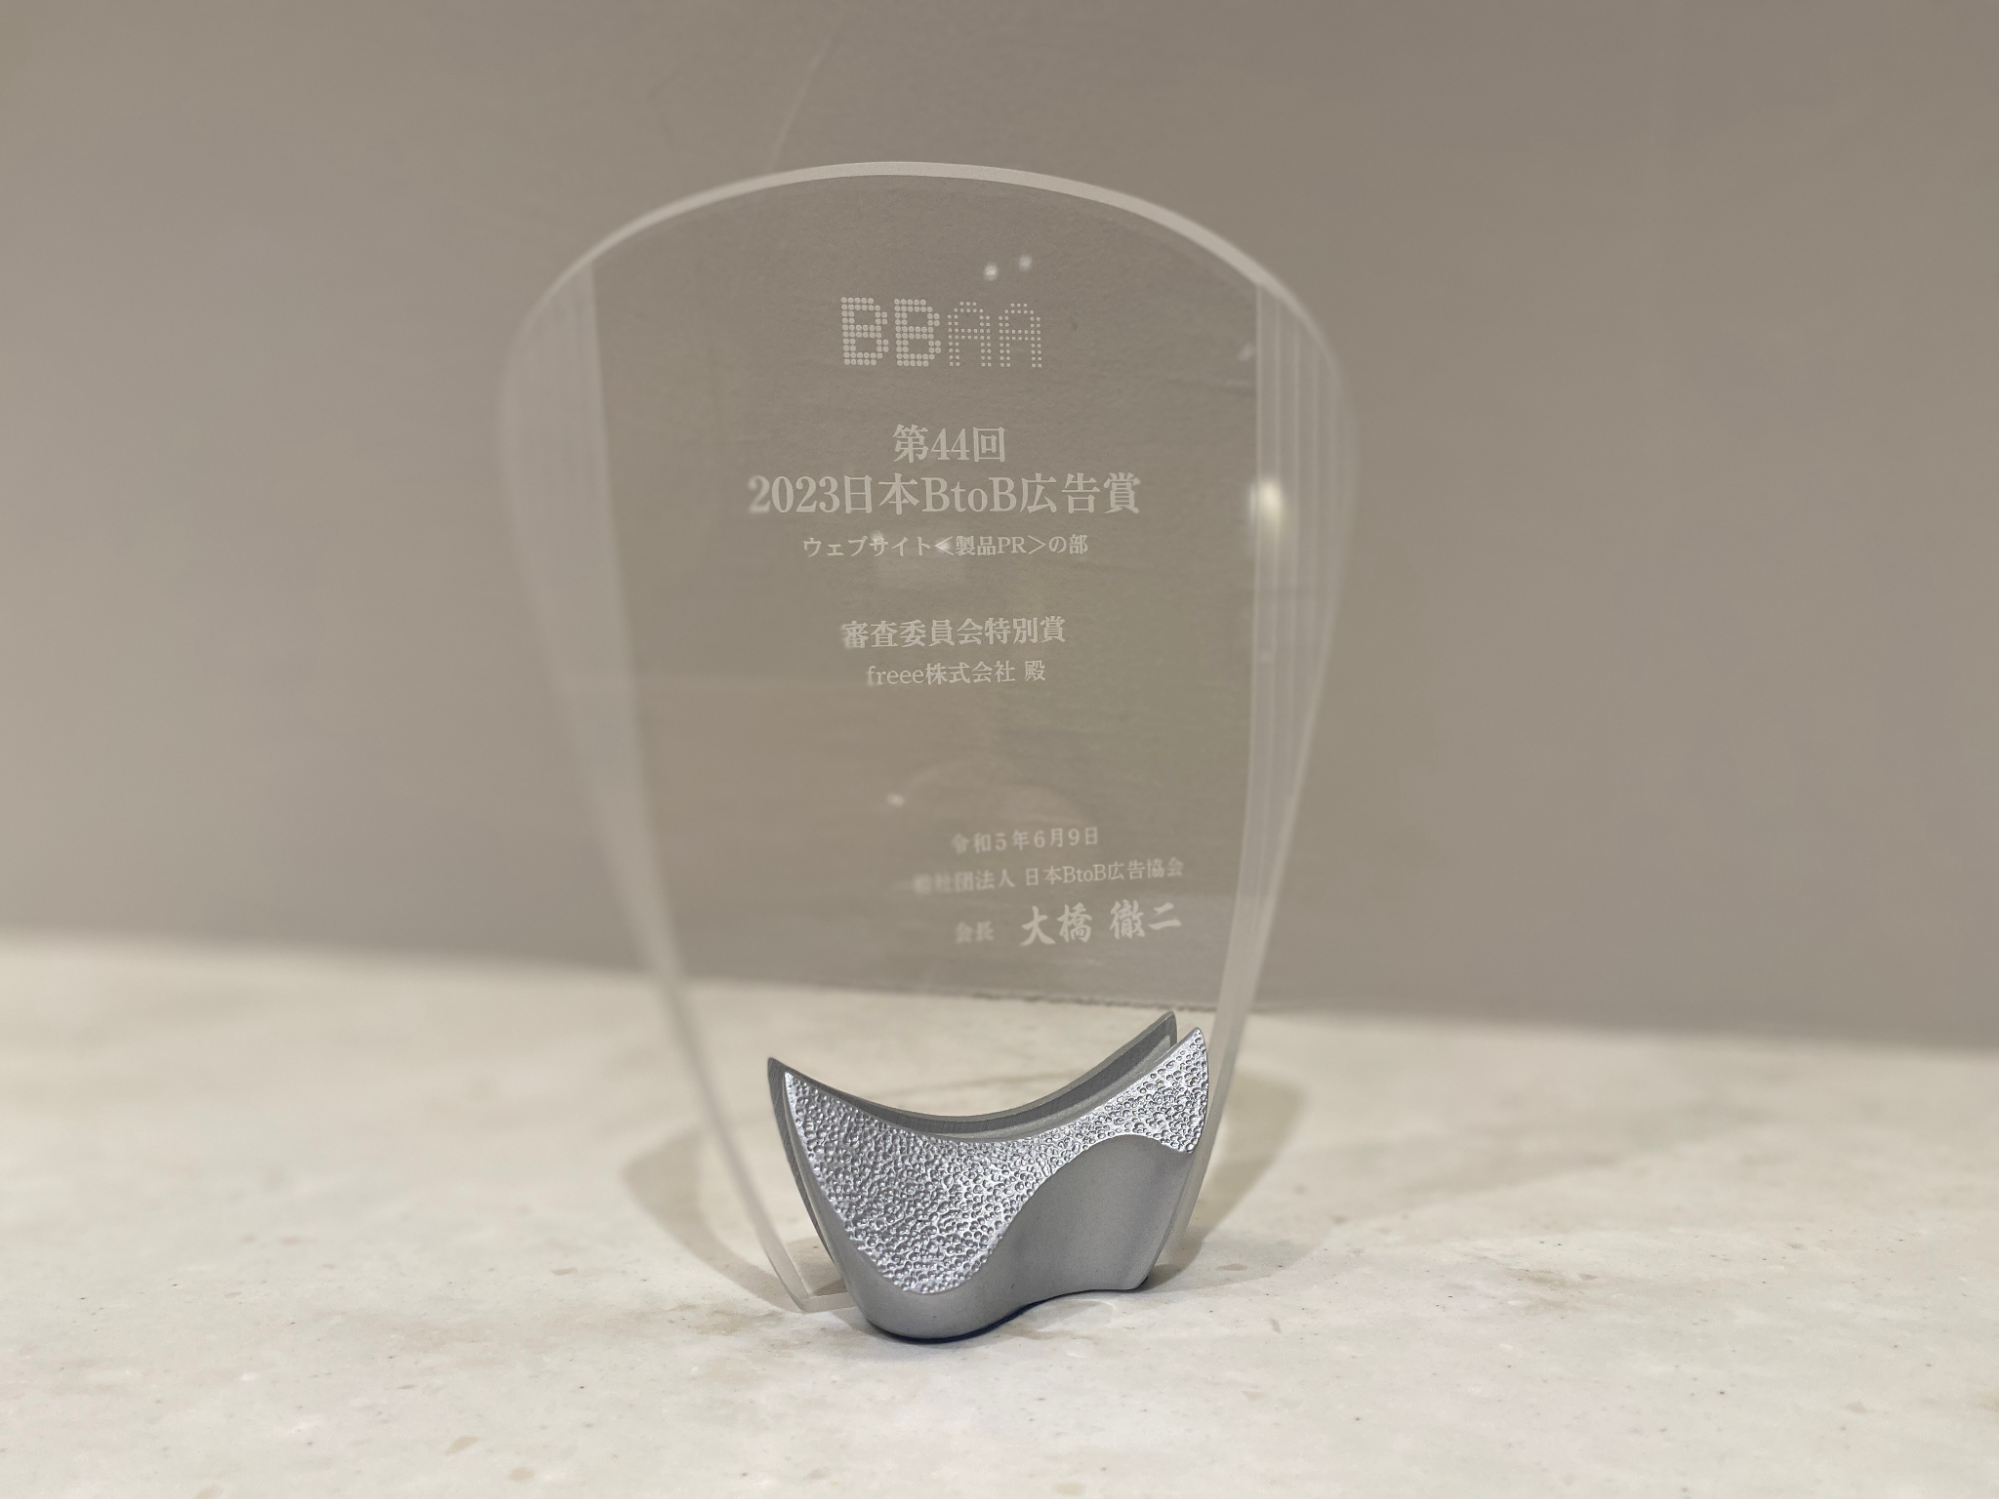 第44回BtoB広告賞において、審査委員会特別賞を受賞を記念したレリーフの写真。左右がせり上がっている銀色の土台（小さな挟み板）に、ガラス板が挟まれているレリーフ。受賞記念も文字が刻まれている。